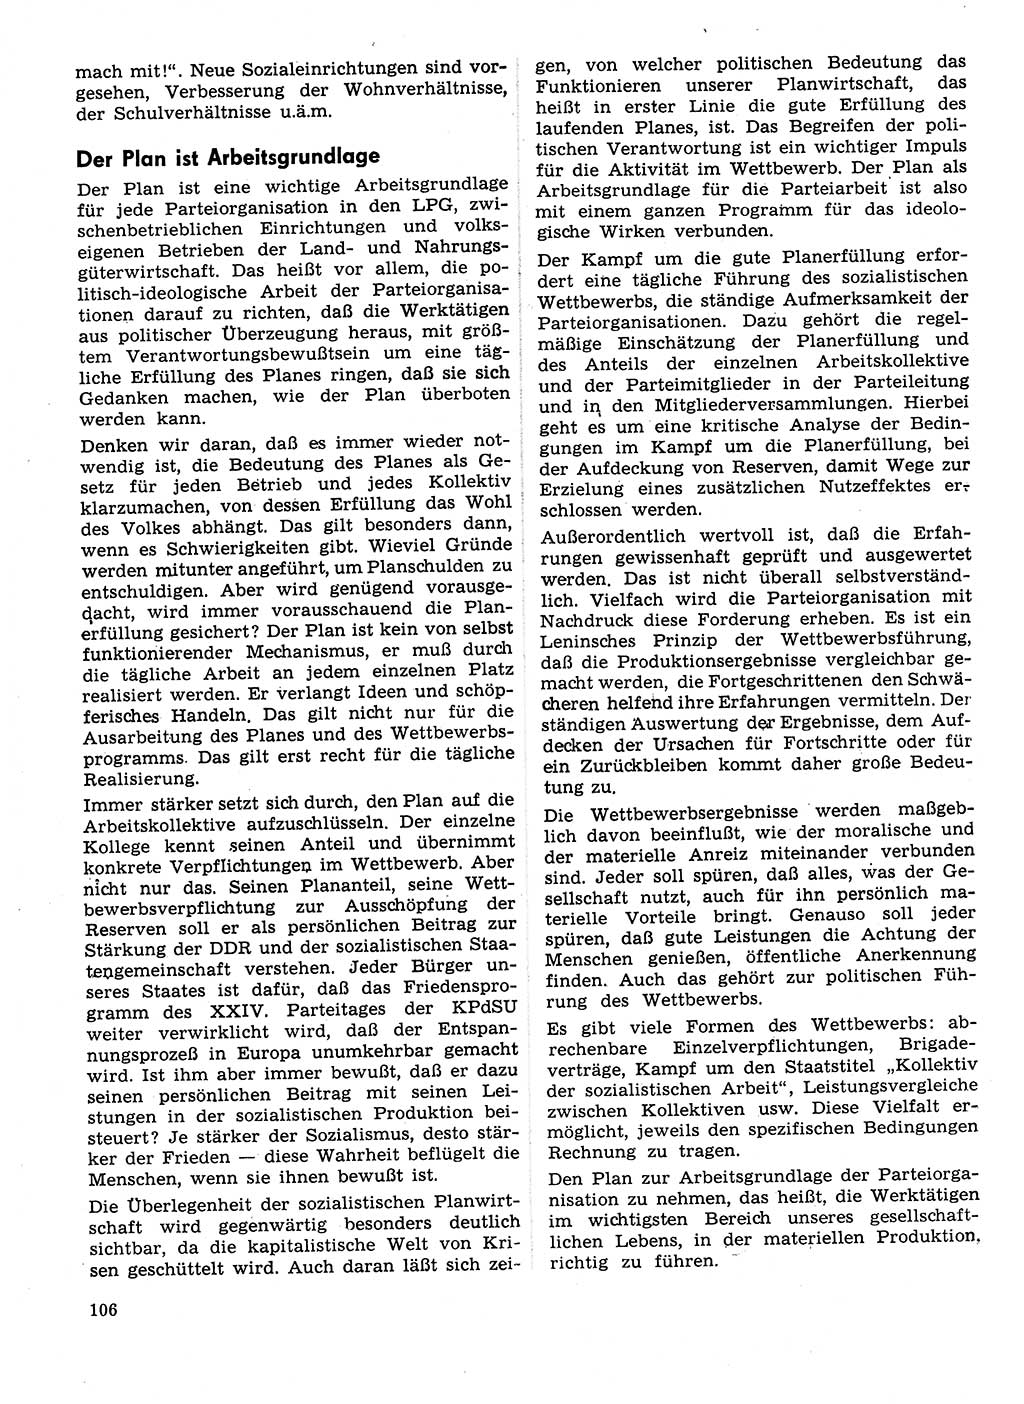 Neuer Weg (NW), Organ des Zentralkomitees (ZK) der SED (Sozialistische Einheitspartei Deutschlands) für Fragen des Parteilebens, 29. Jahrgang [Deutsche Demokratische Republik (DDR)] 1974, Seite 106 (NW ZK SED DDR 1974, S. 106)